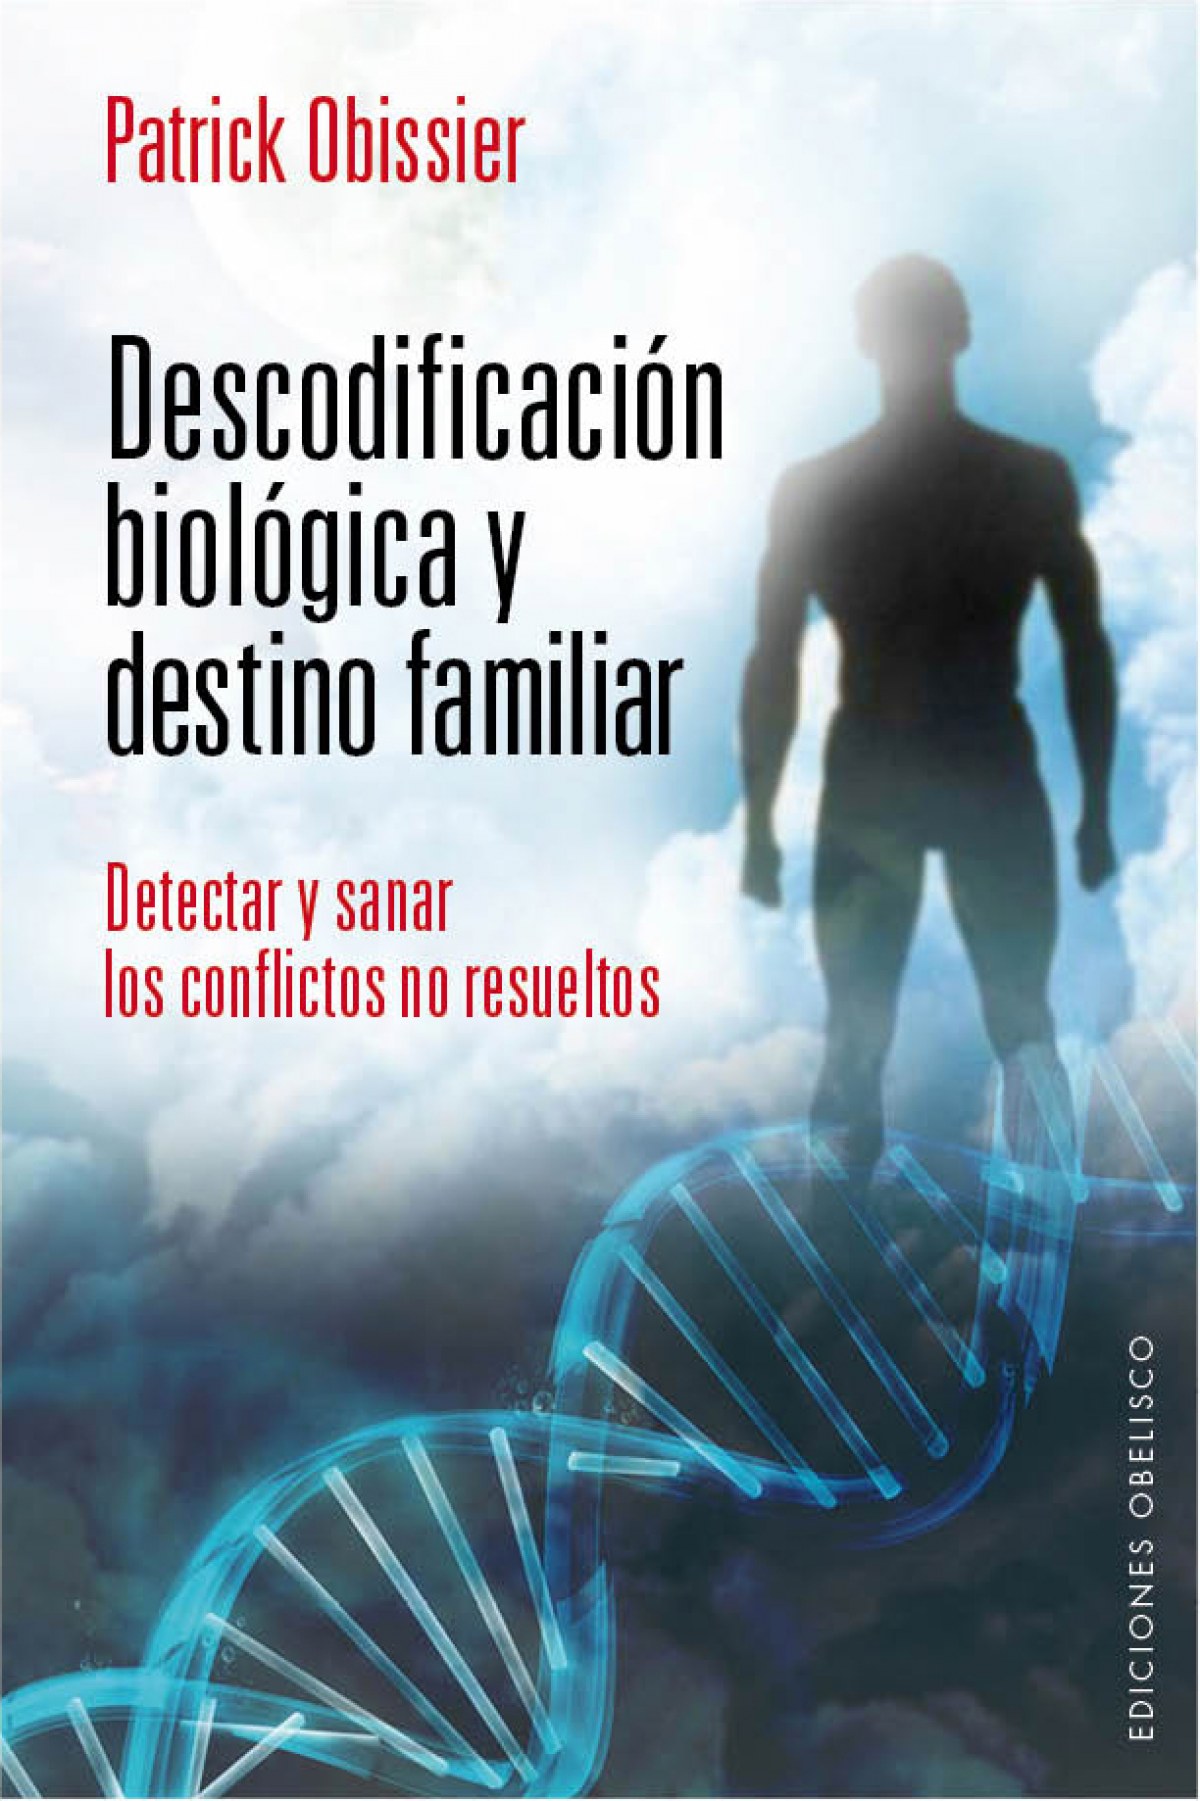 Estimar Pionero Obsesión Descodificacion biologia y destino familiar - Librerias Nobel.es